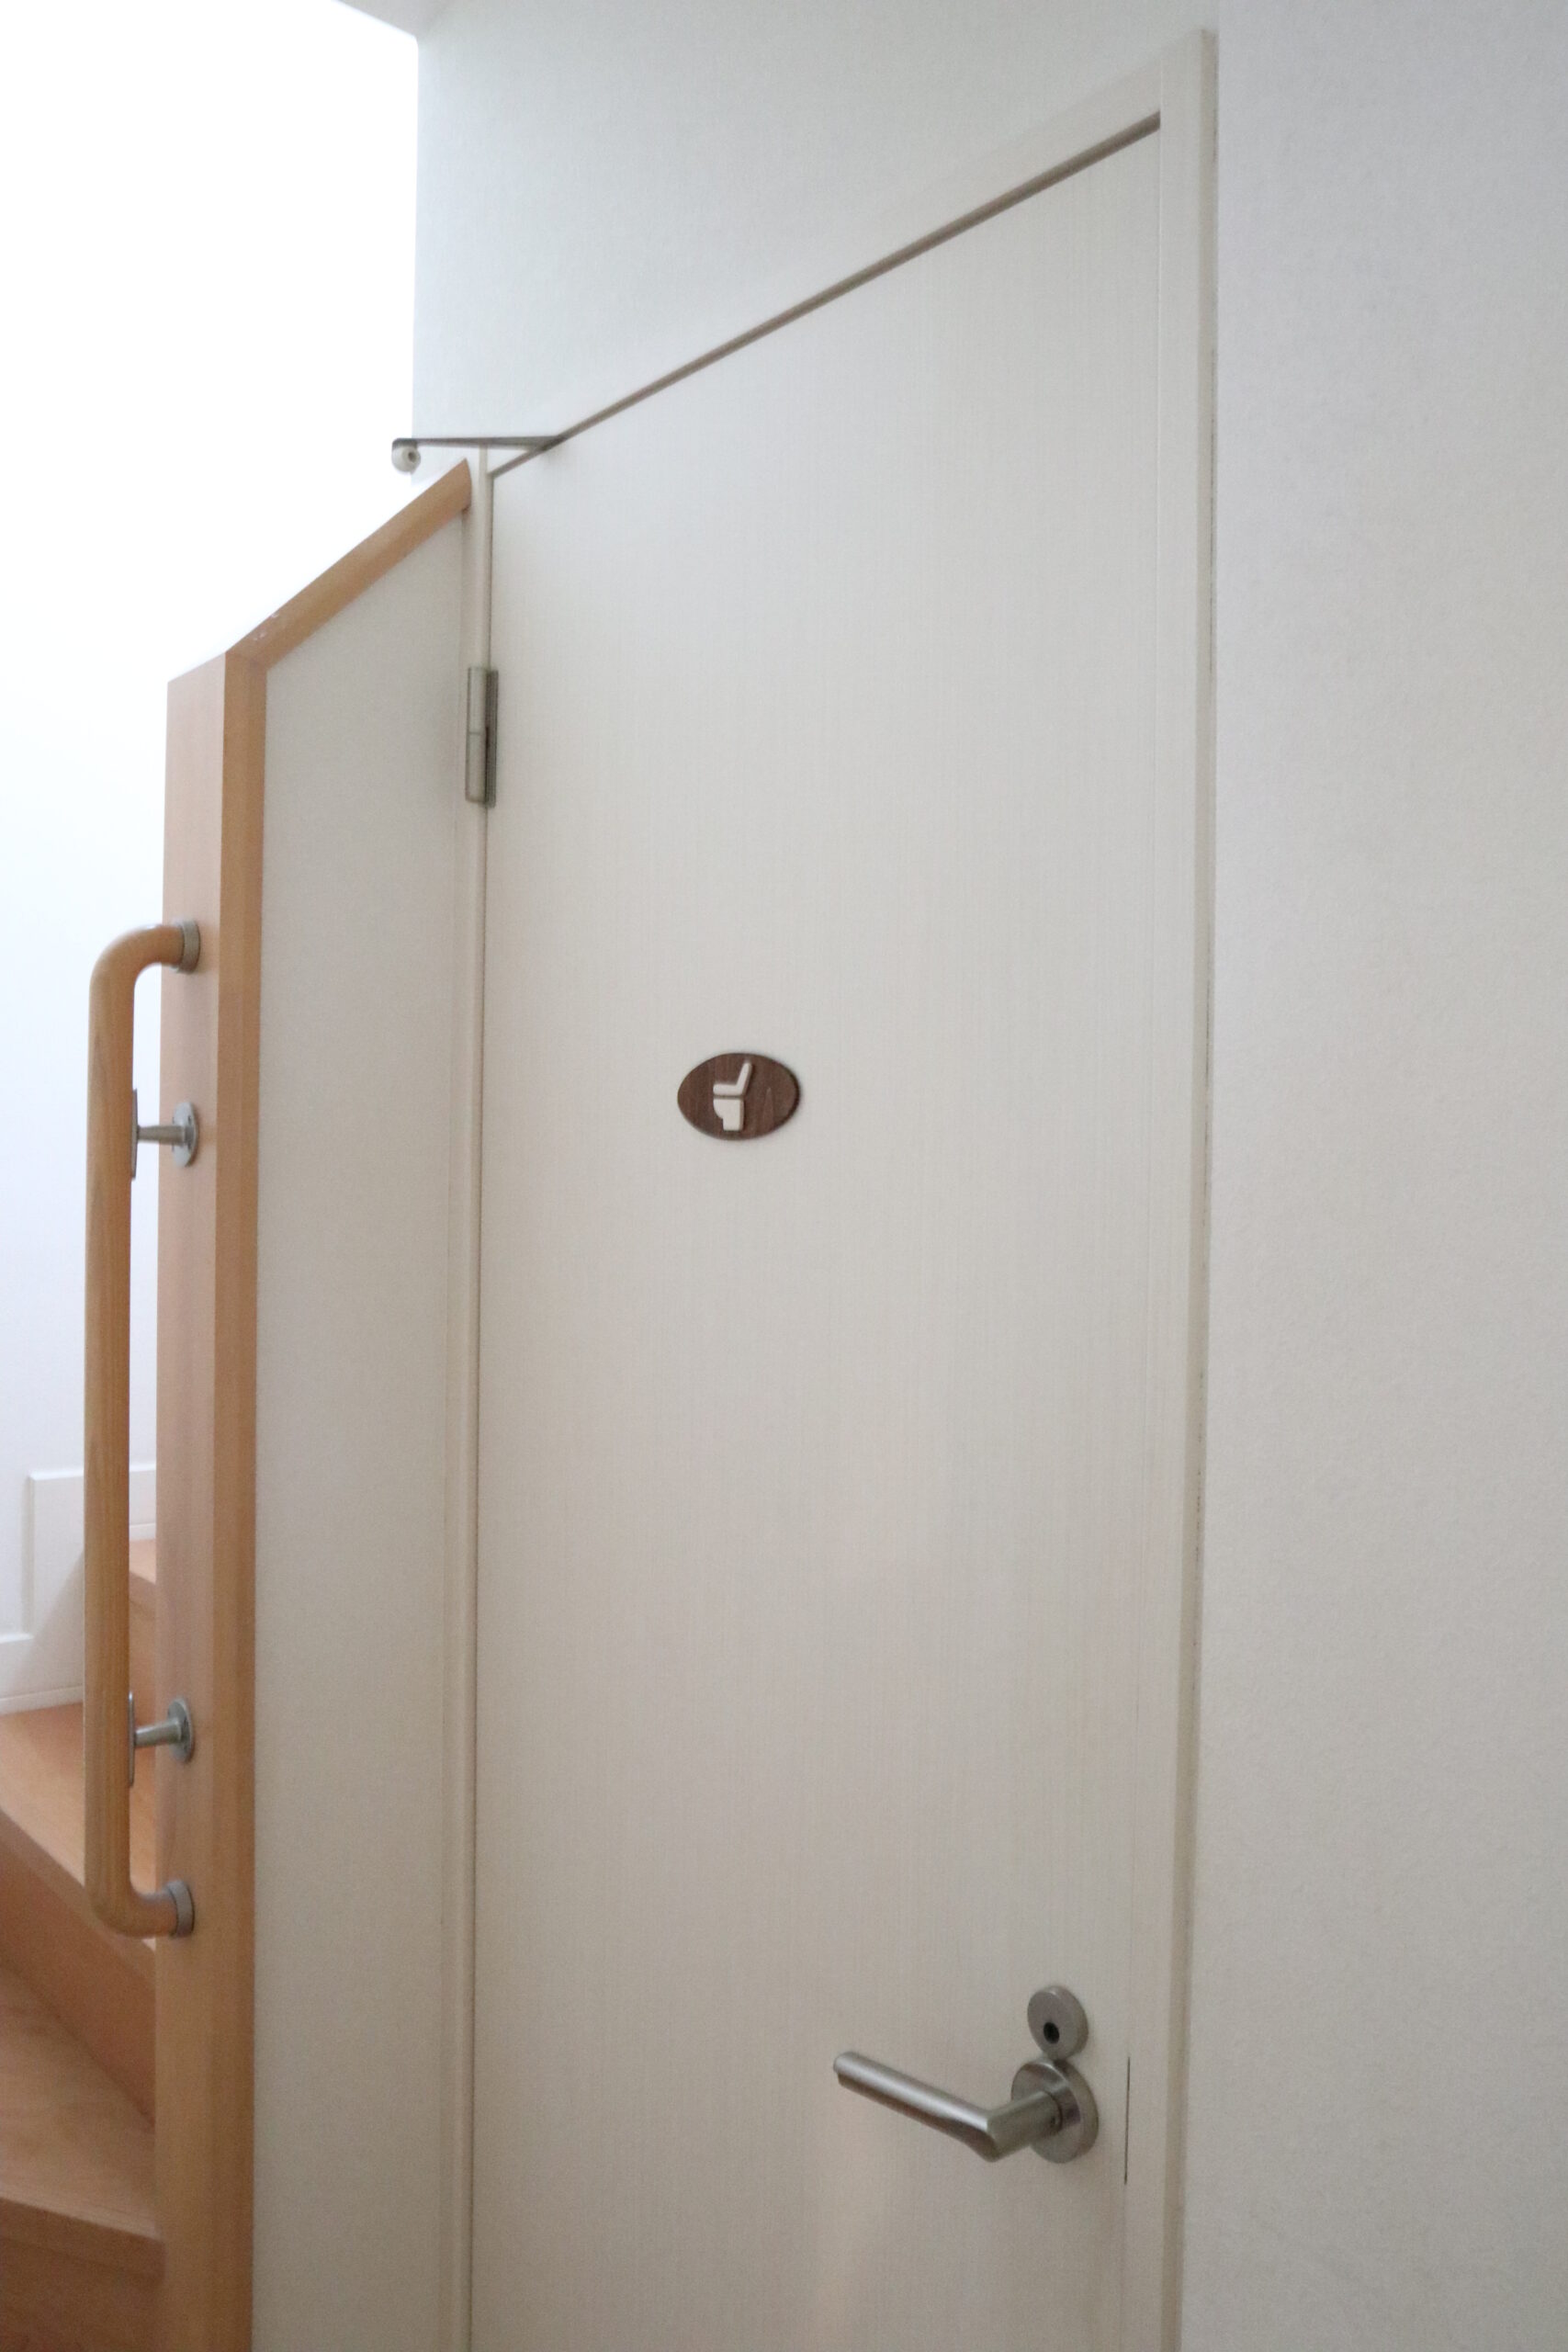 DIY Toilet Sign on the door